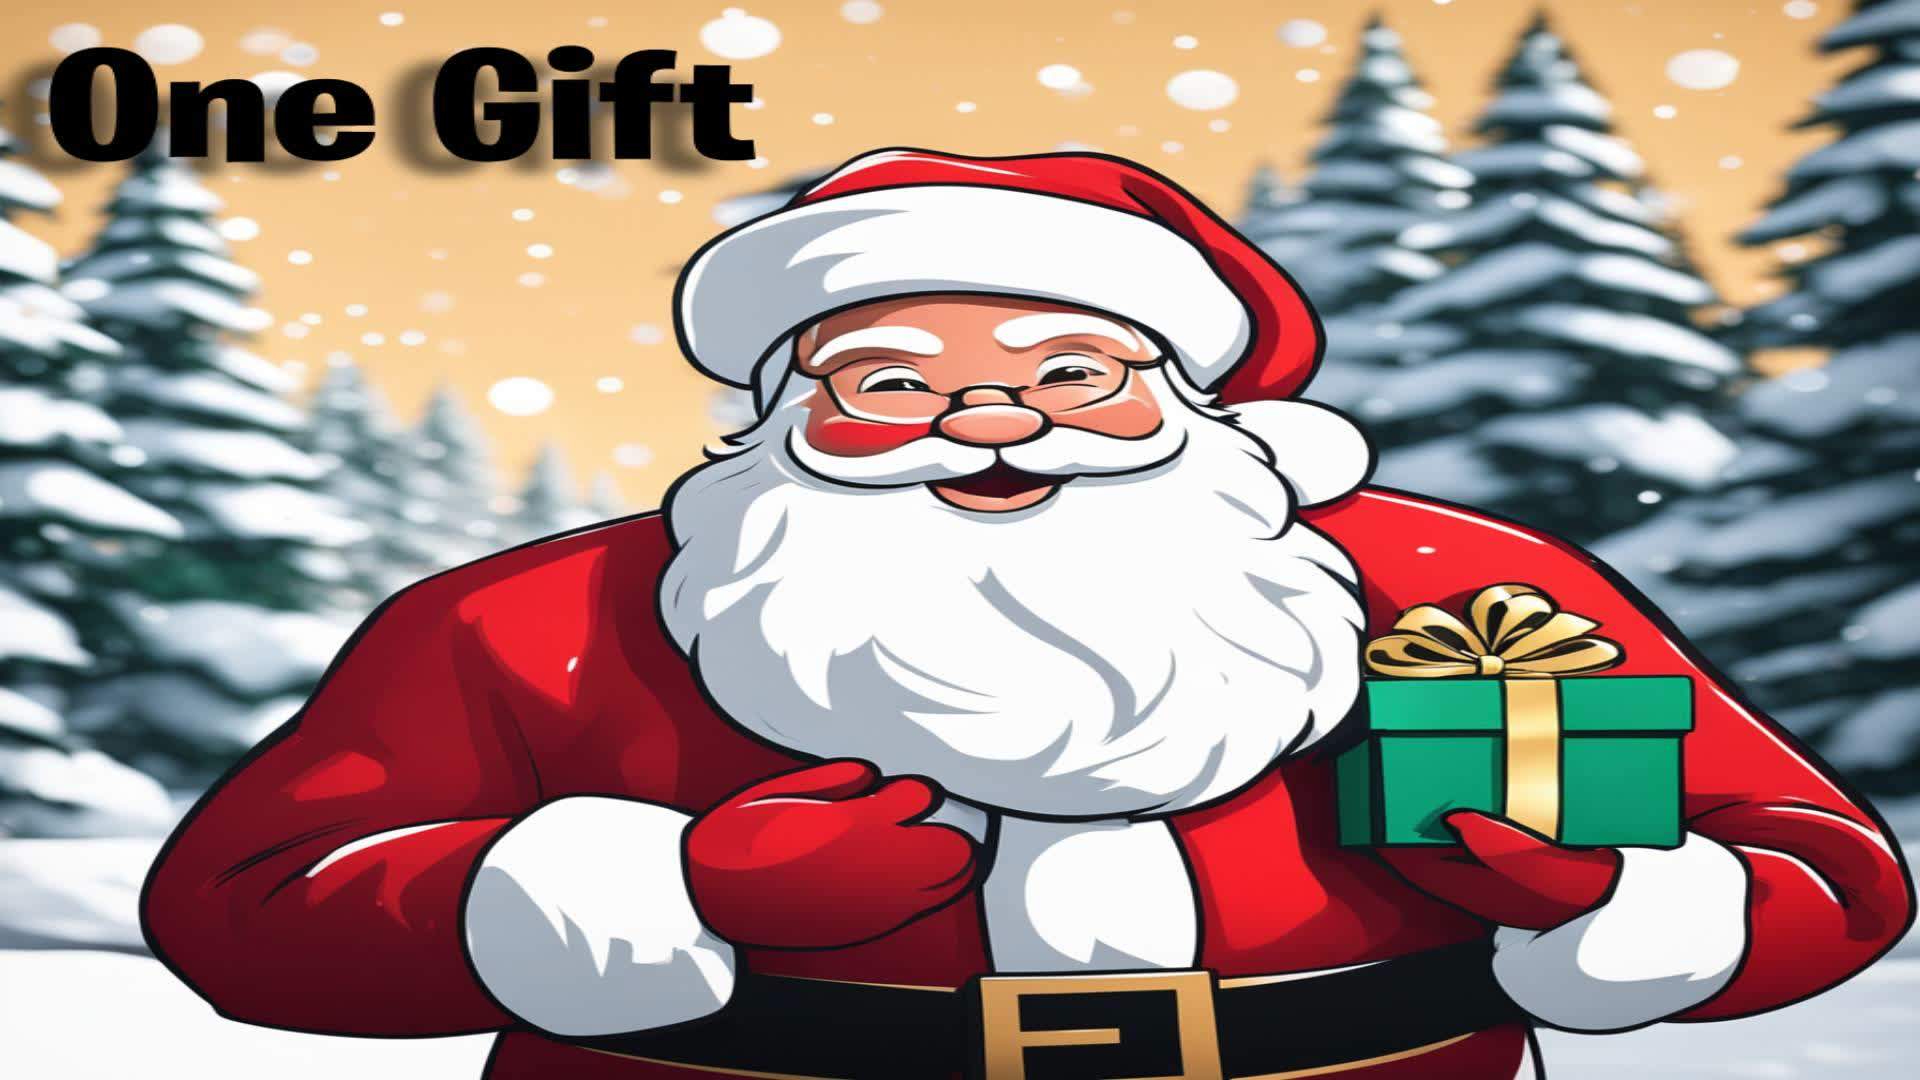 Christmas 1 Gift game